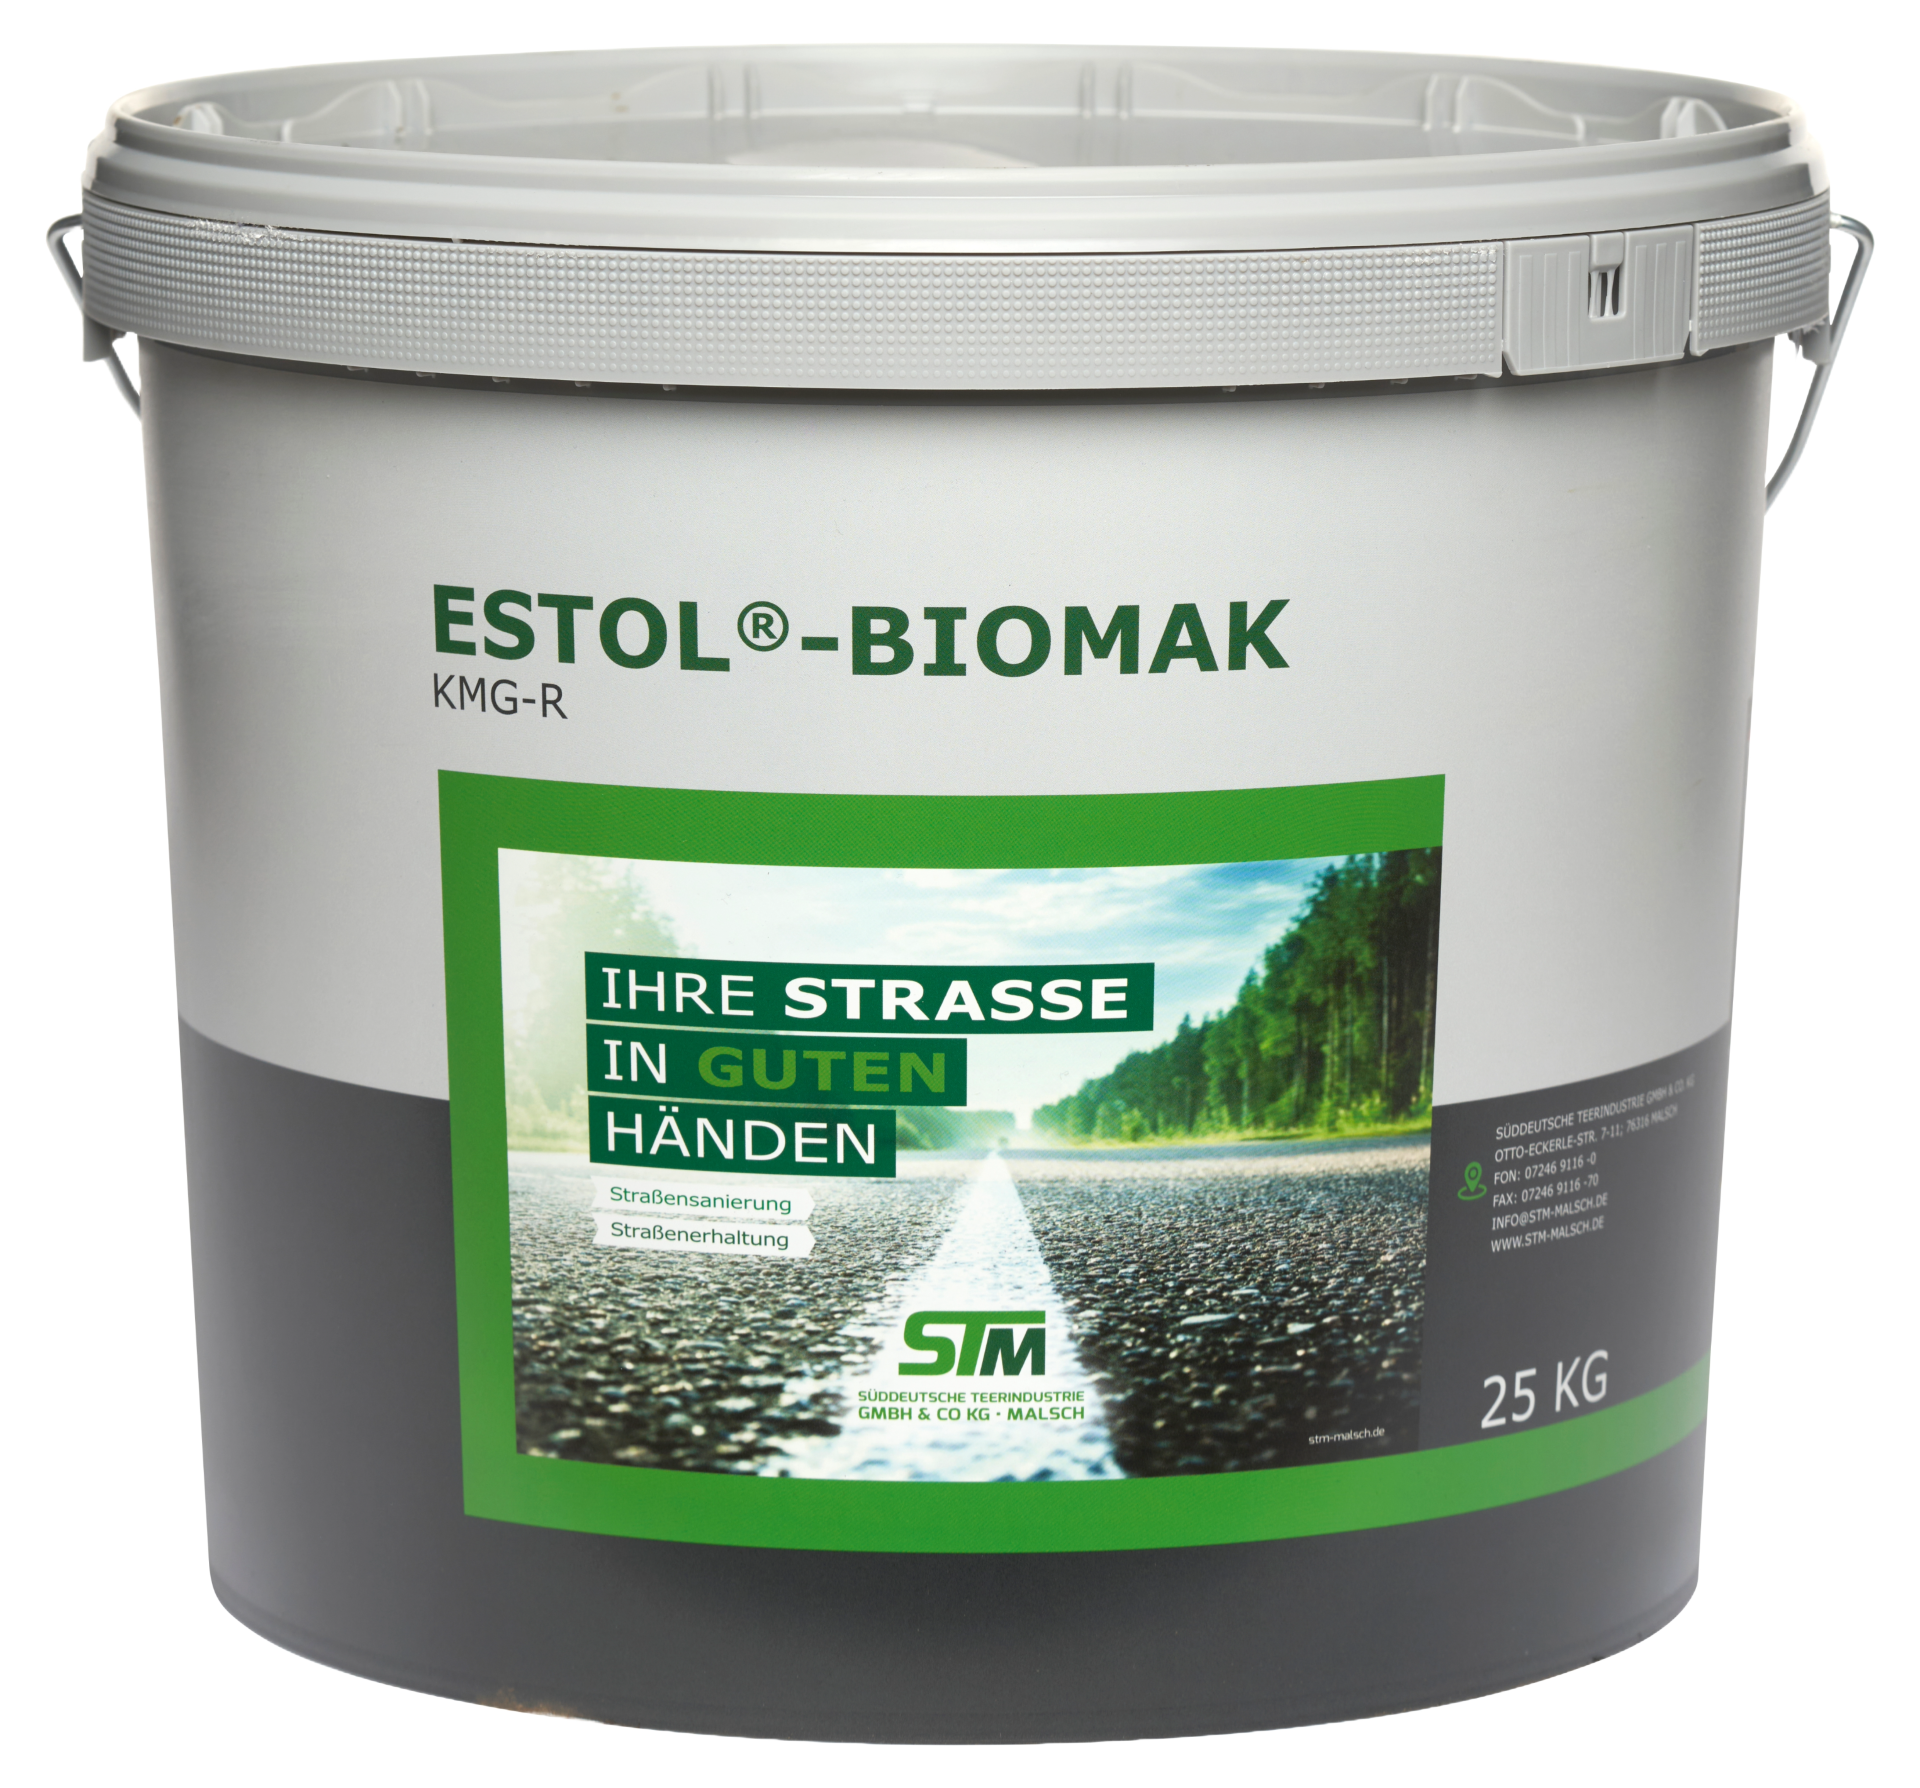 Biomak reactief reparatie asfalt - Biomak-reparatie-asfalt-laagdikte-tot-50mm-asfalt-repareren